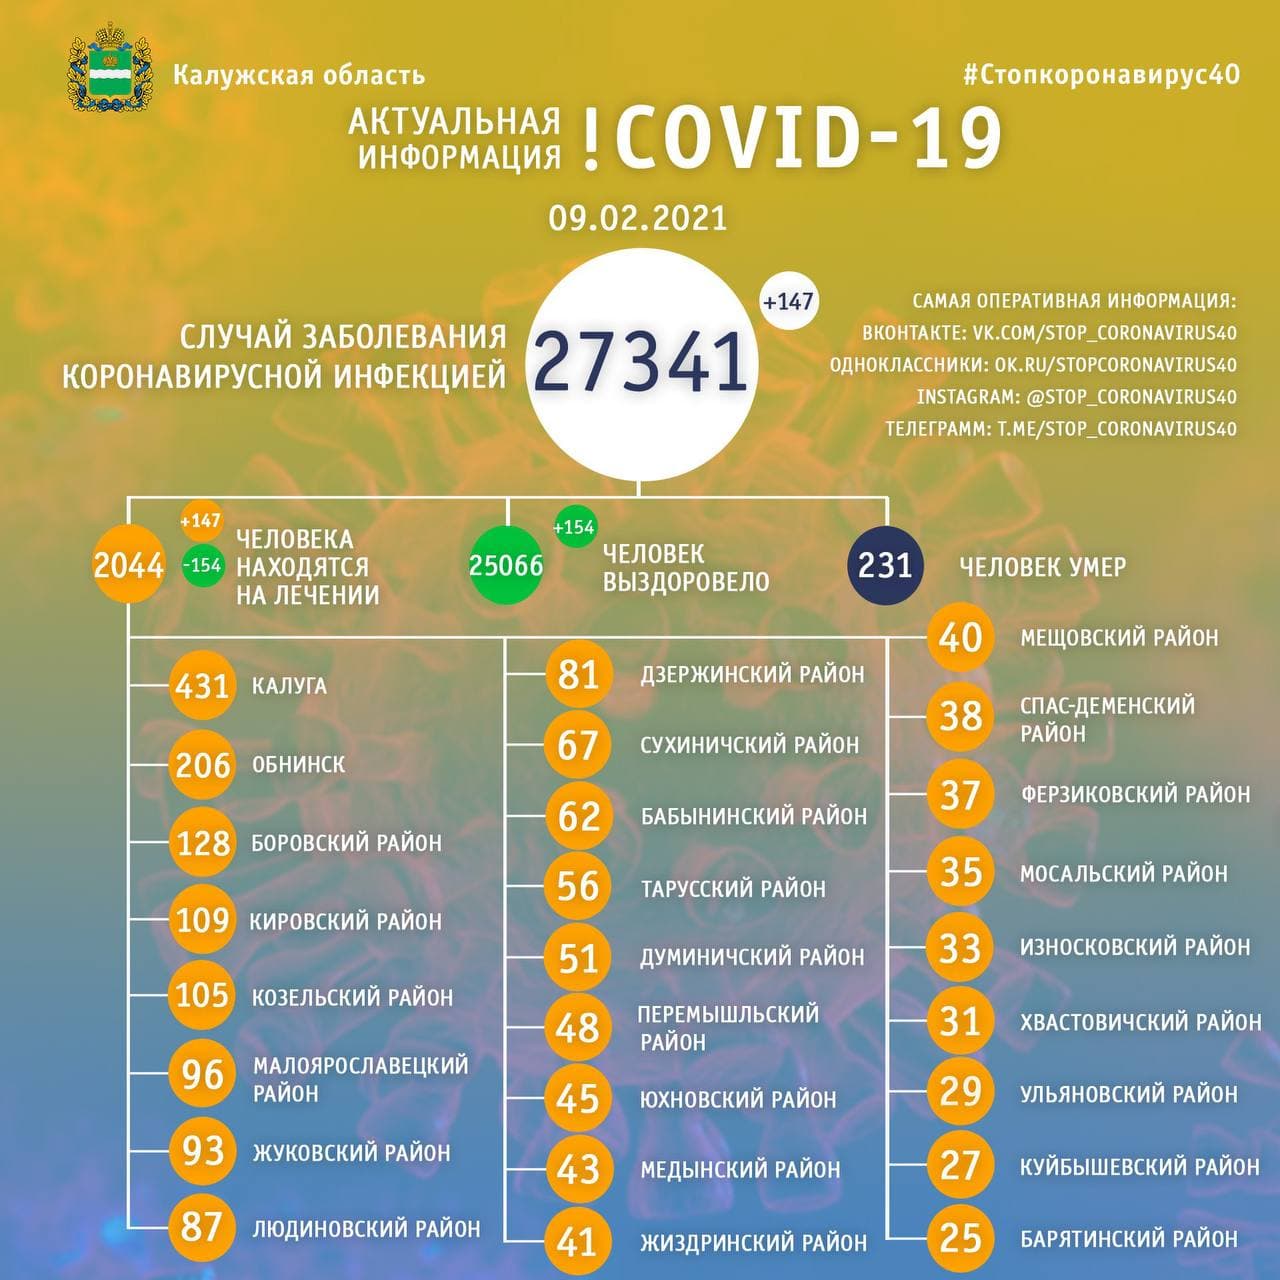 Официальные данные по коронавирусу в Калужской области на 9 февраля 2021 года.